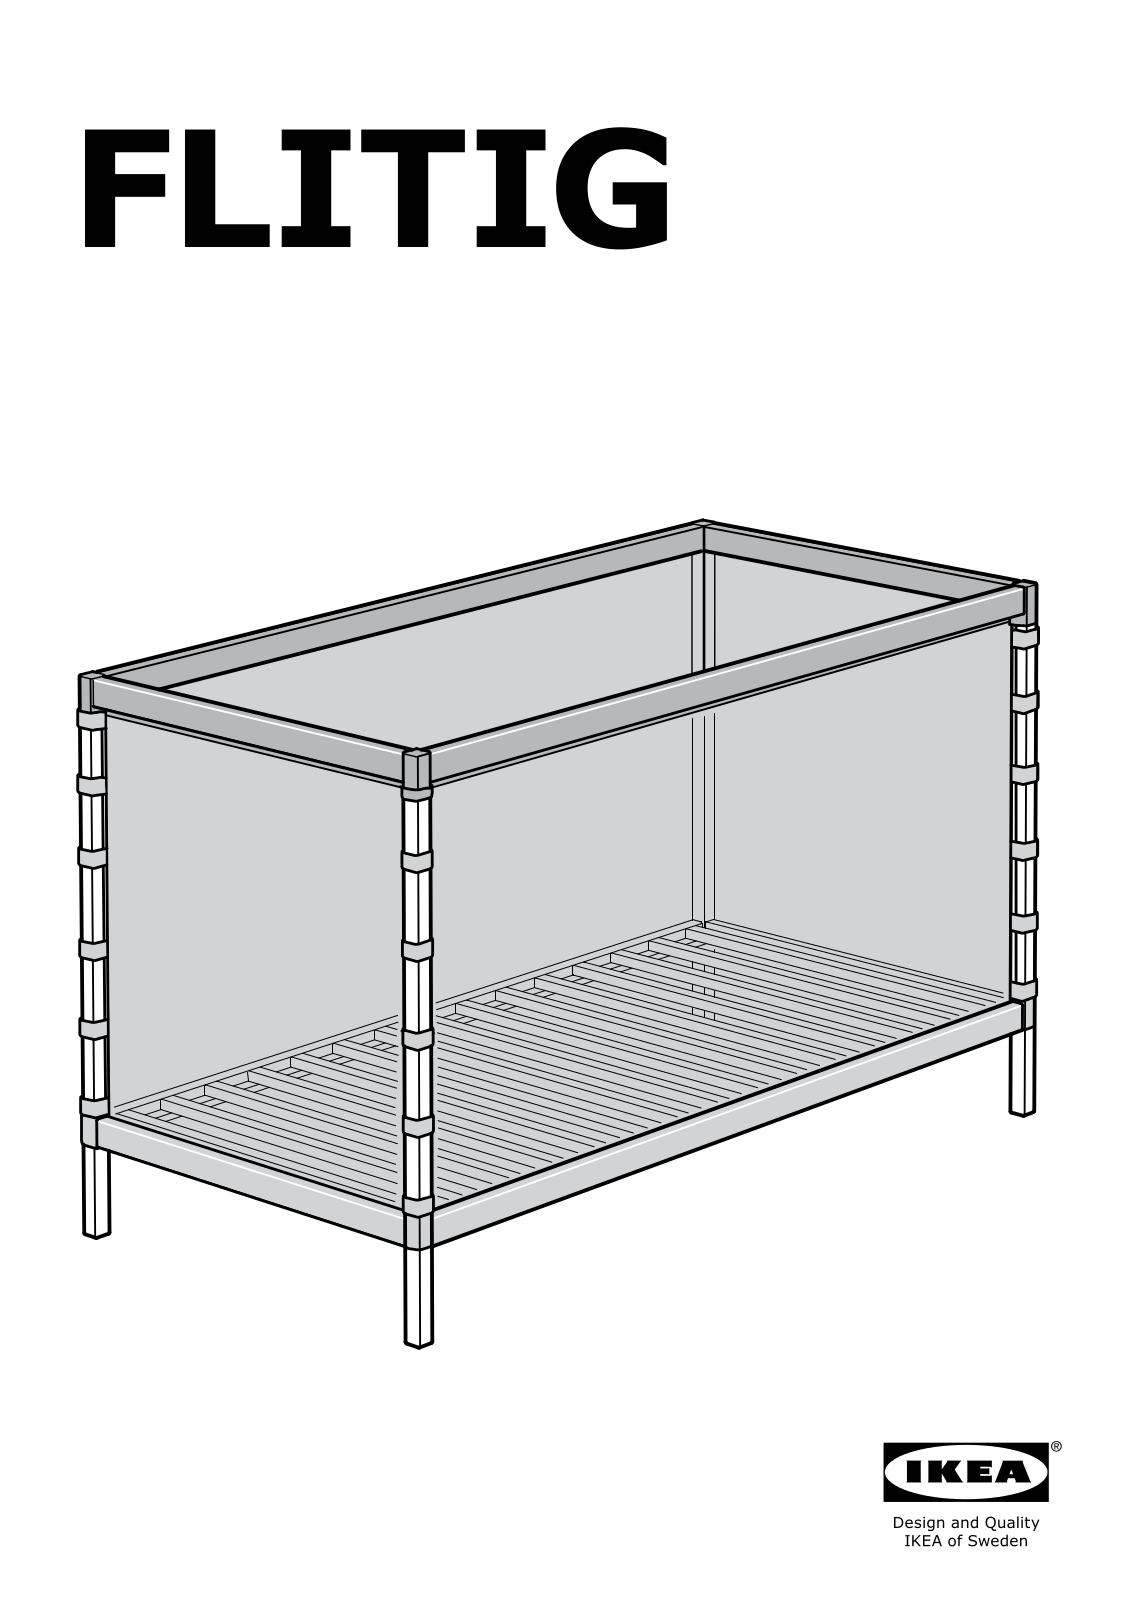 IKEA FLITIG User Manual